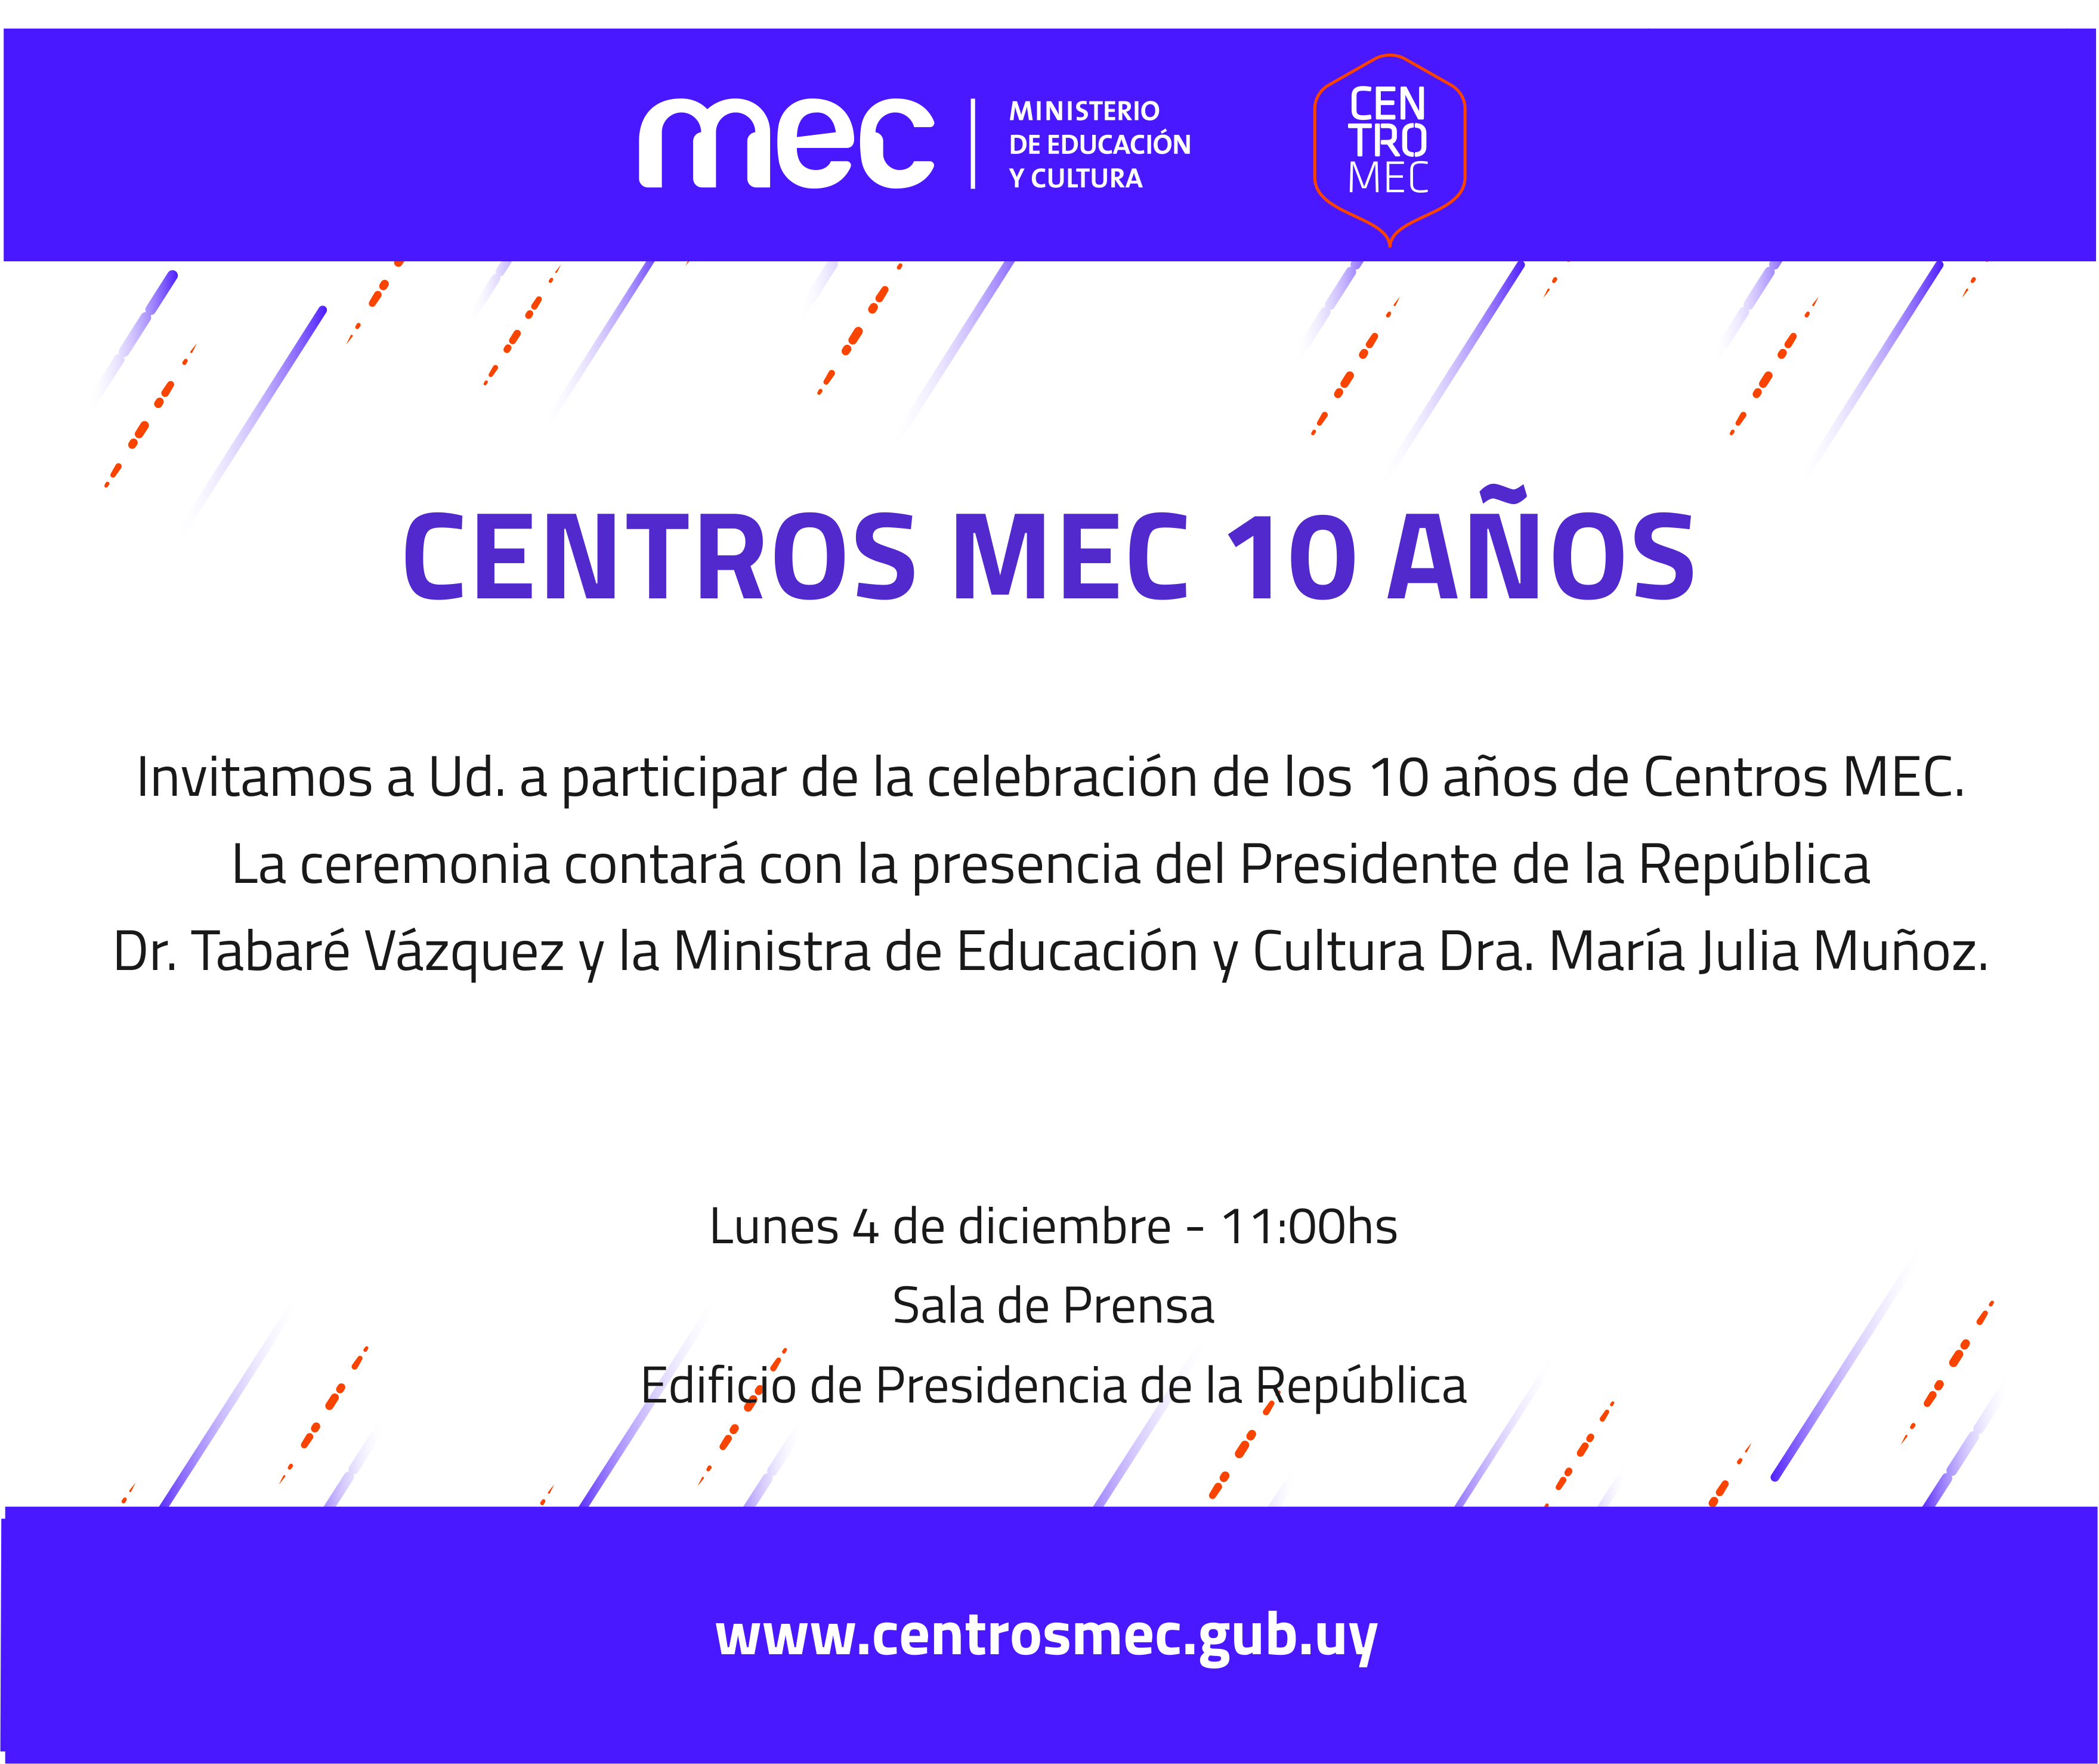 Centros MEC celebran sus 10 años